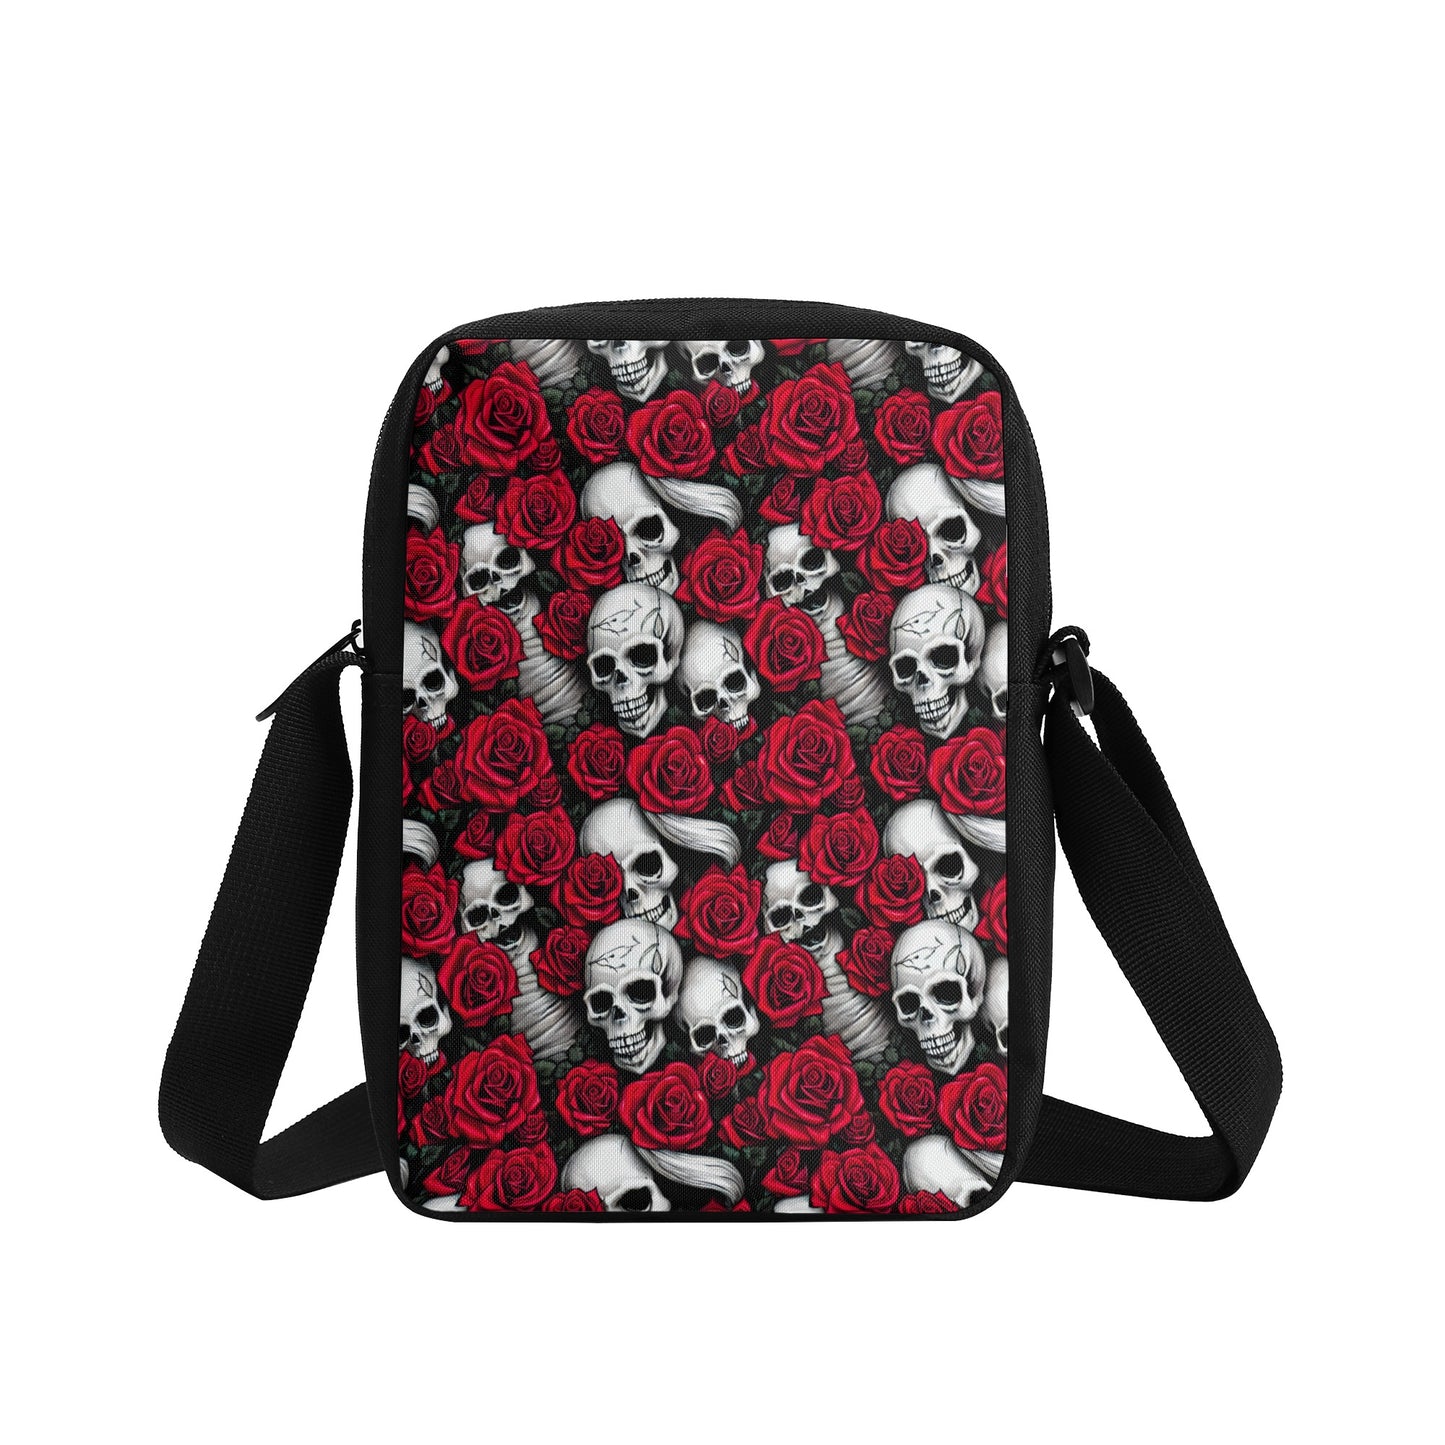 Roses And Skulls Cross-Body Bag